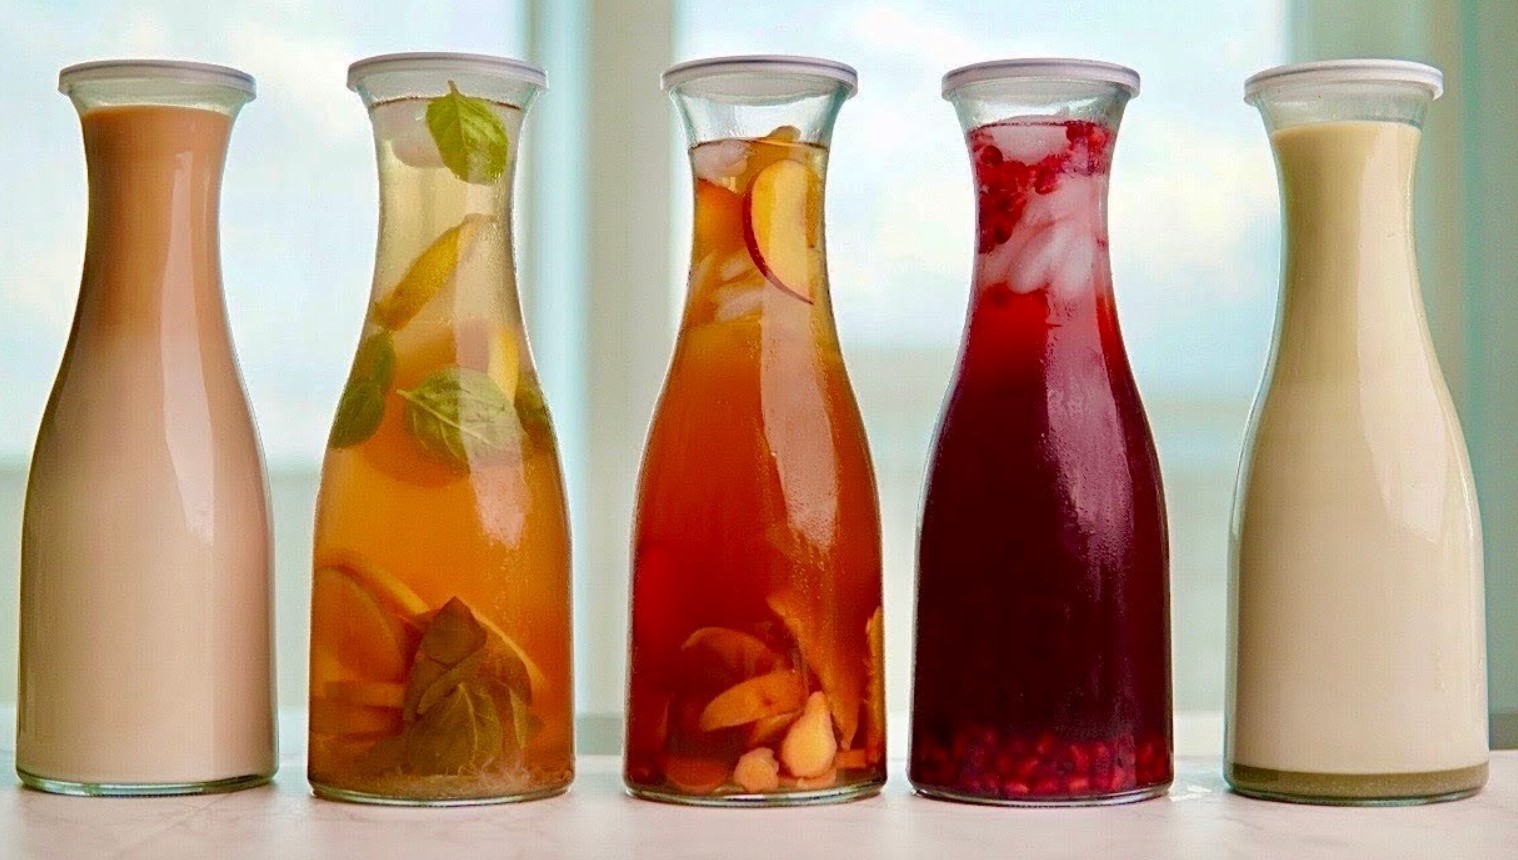 وصفات مشروبات باردة للصيف منعشة أسهل عصائر طبيعية في رمضان تهون حر الصيف